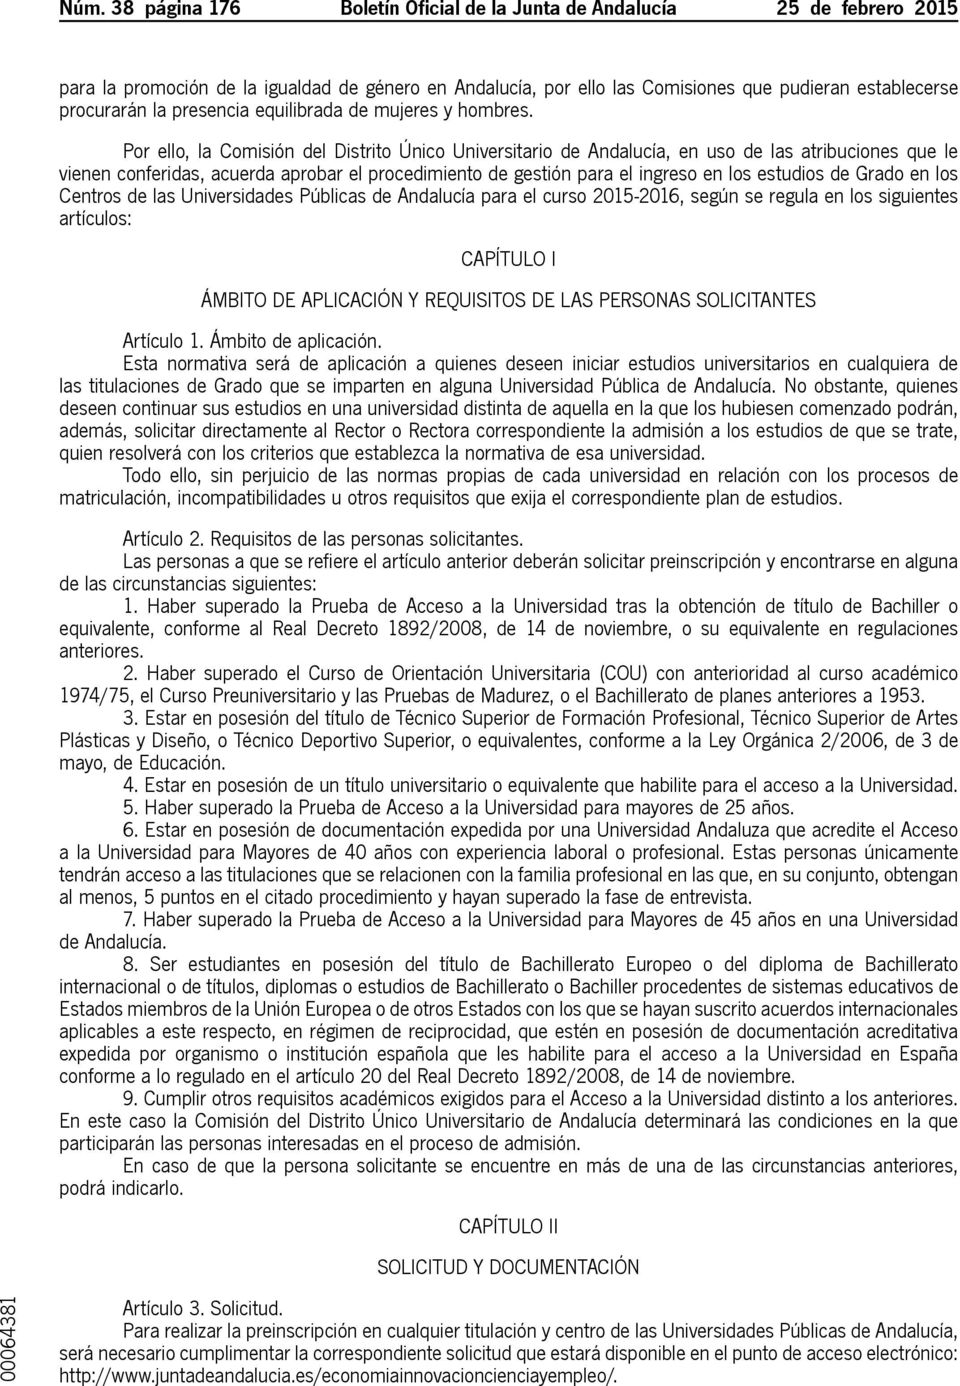 Por ello, la Comisión del Distrito Único Universitario de Andalucía, en uso de las atribuciones que le vienen conferidas, acuerda aprobar el procedimiento de gestión para el ingreso en los estudios